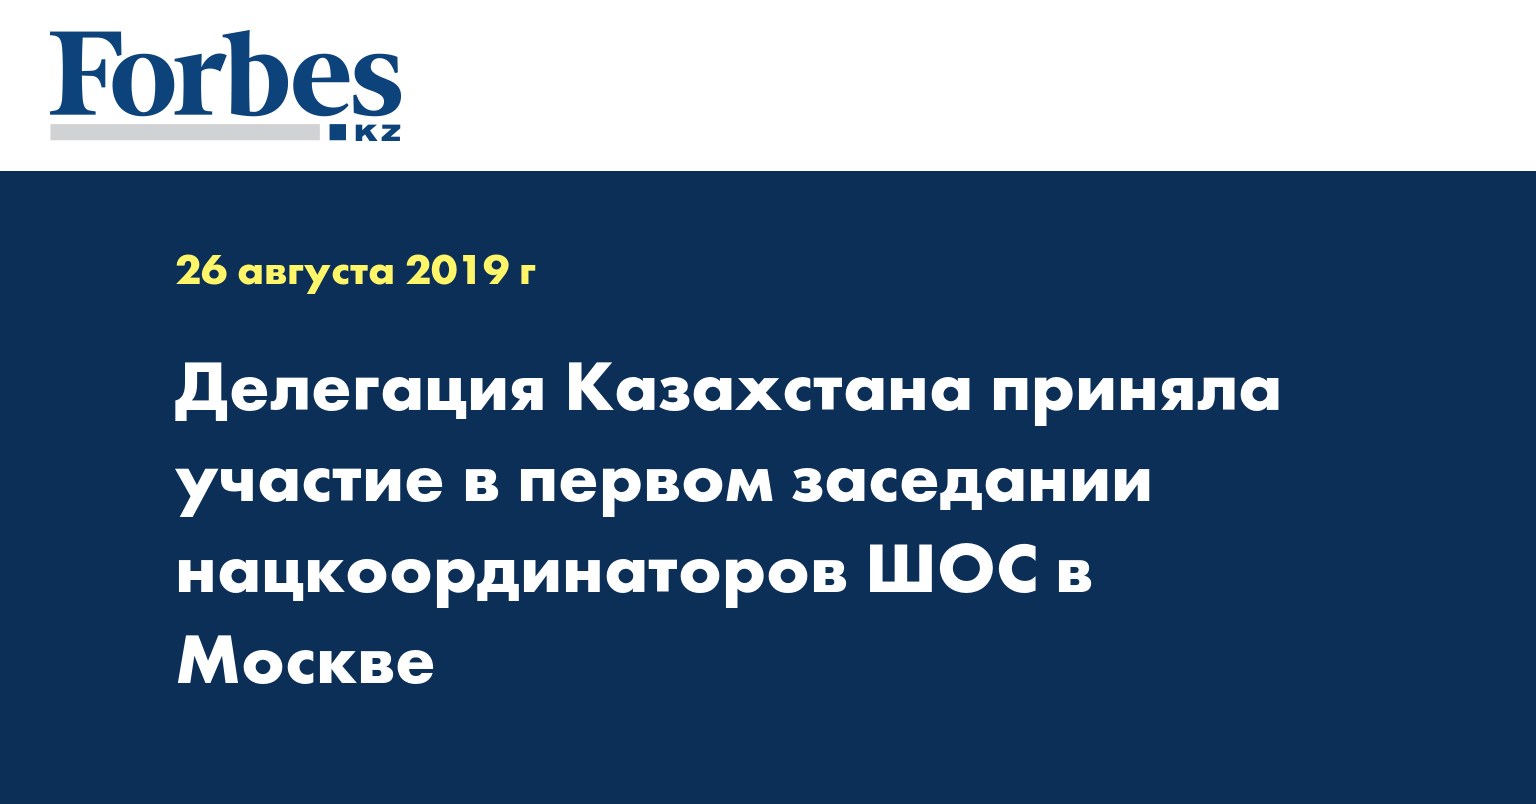 Делегация Казахстана приняла участие в первом заседании нацкоординаторов ШОС в Москве